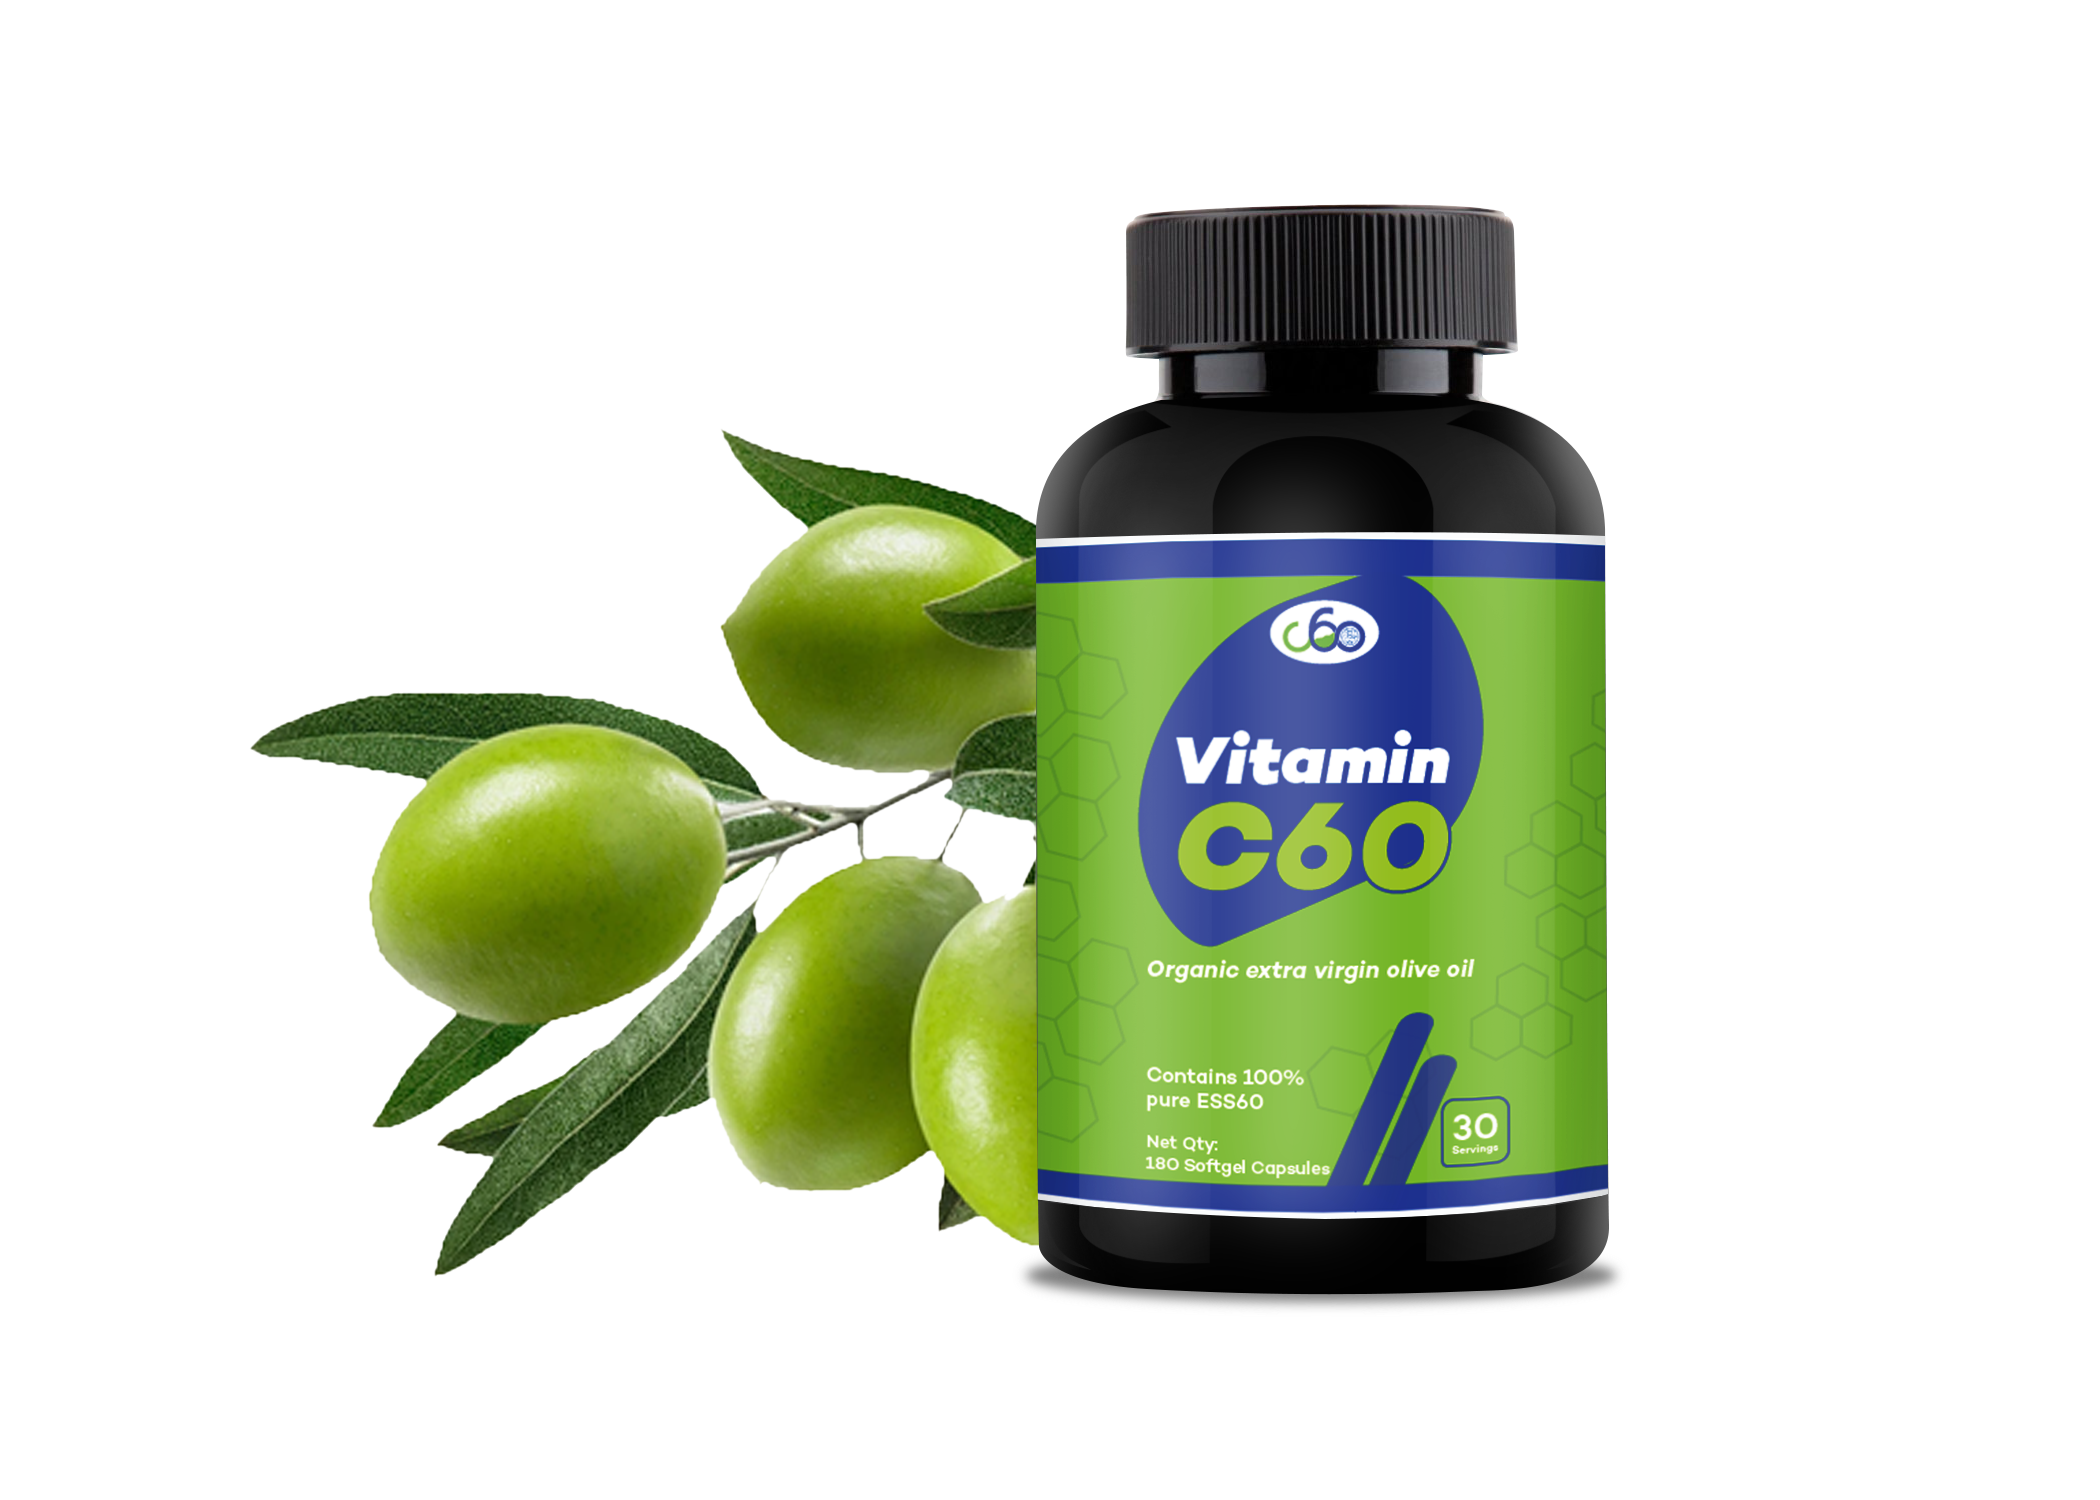 Vitamin C60